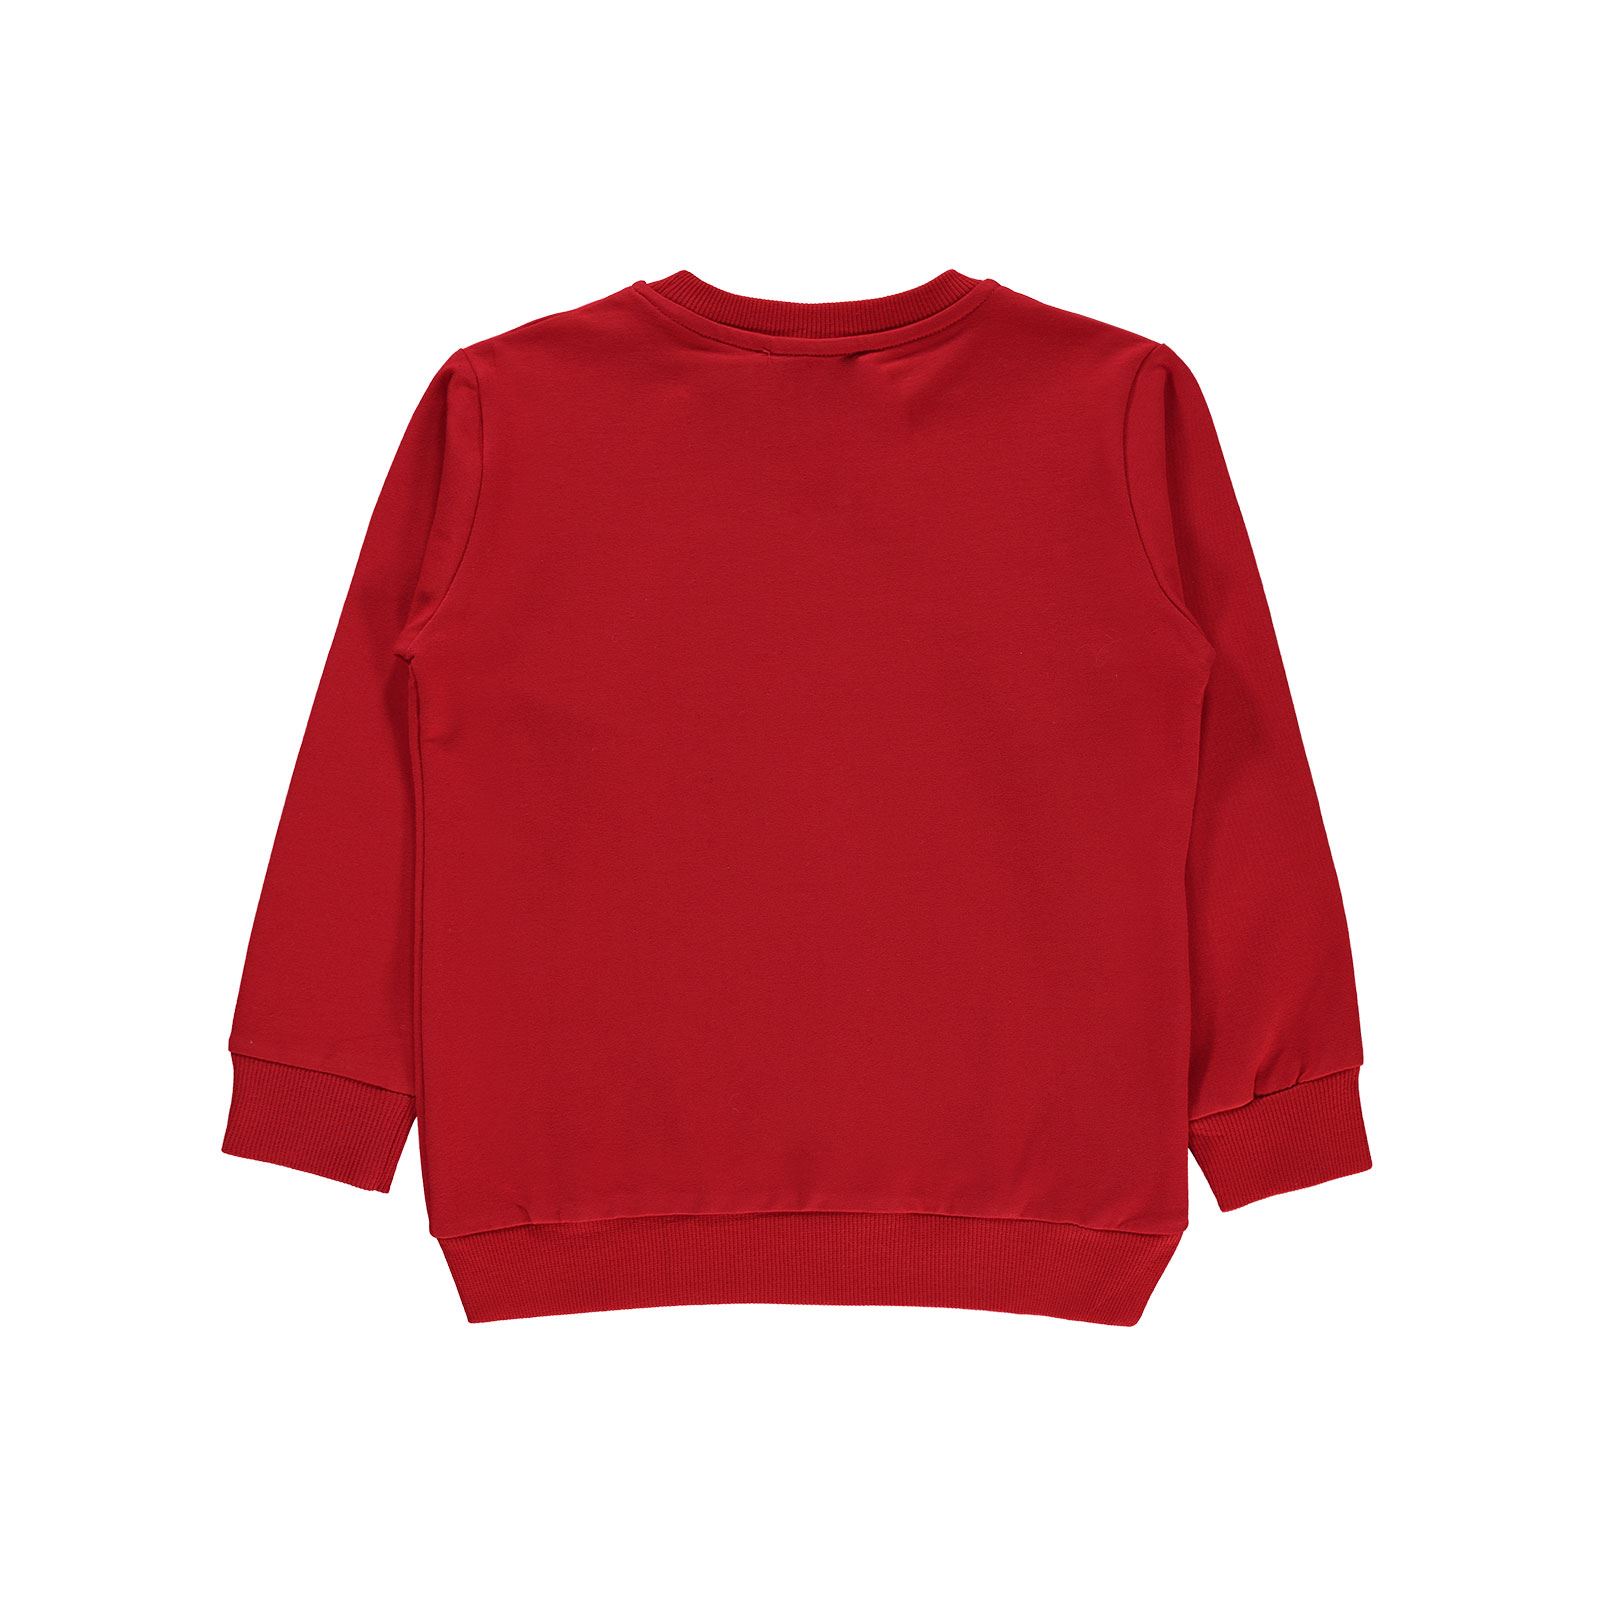 Cix Teen Erkek Çocuk Sweatshirt 6-9 Yaş Kırmızı